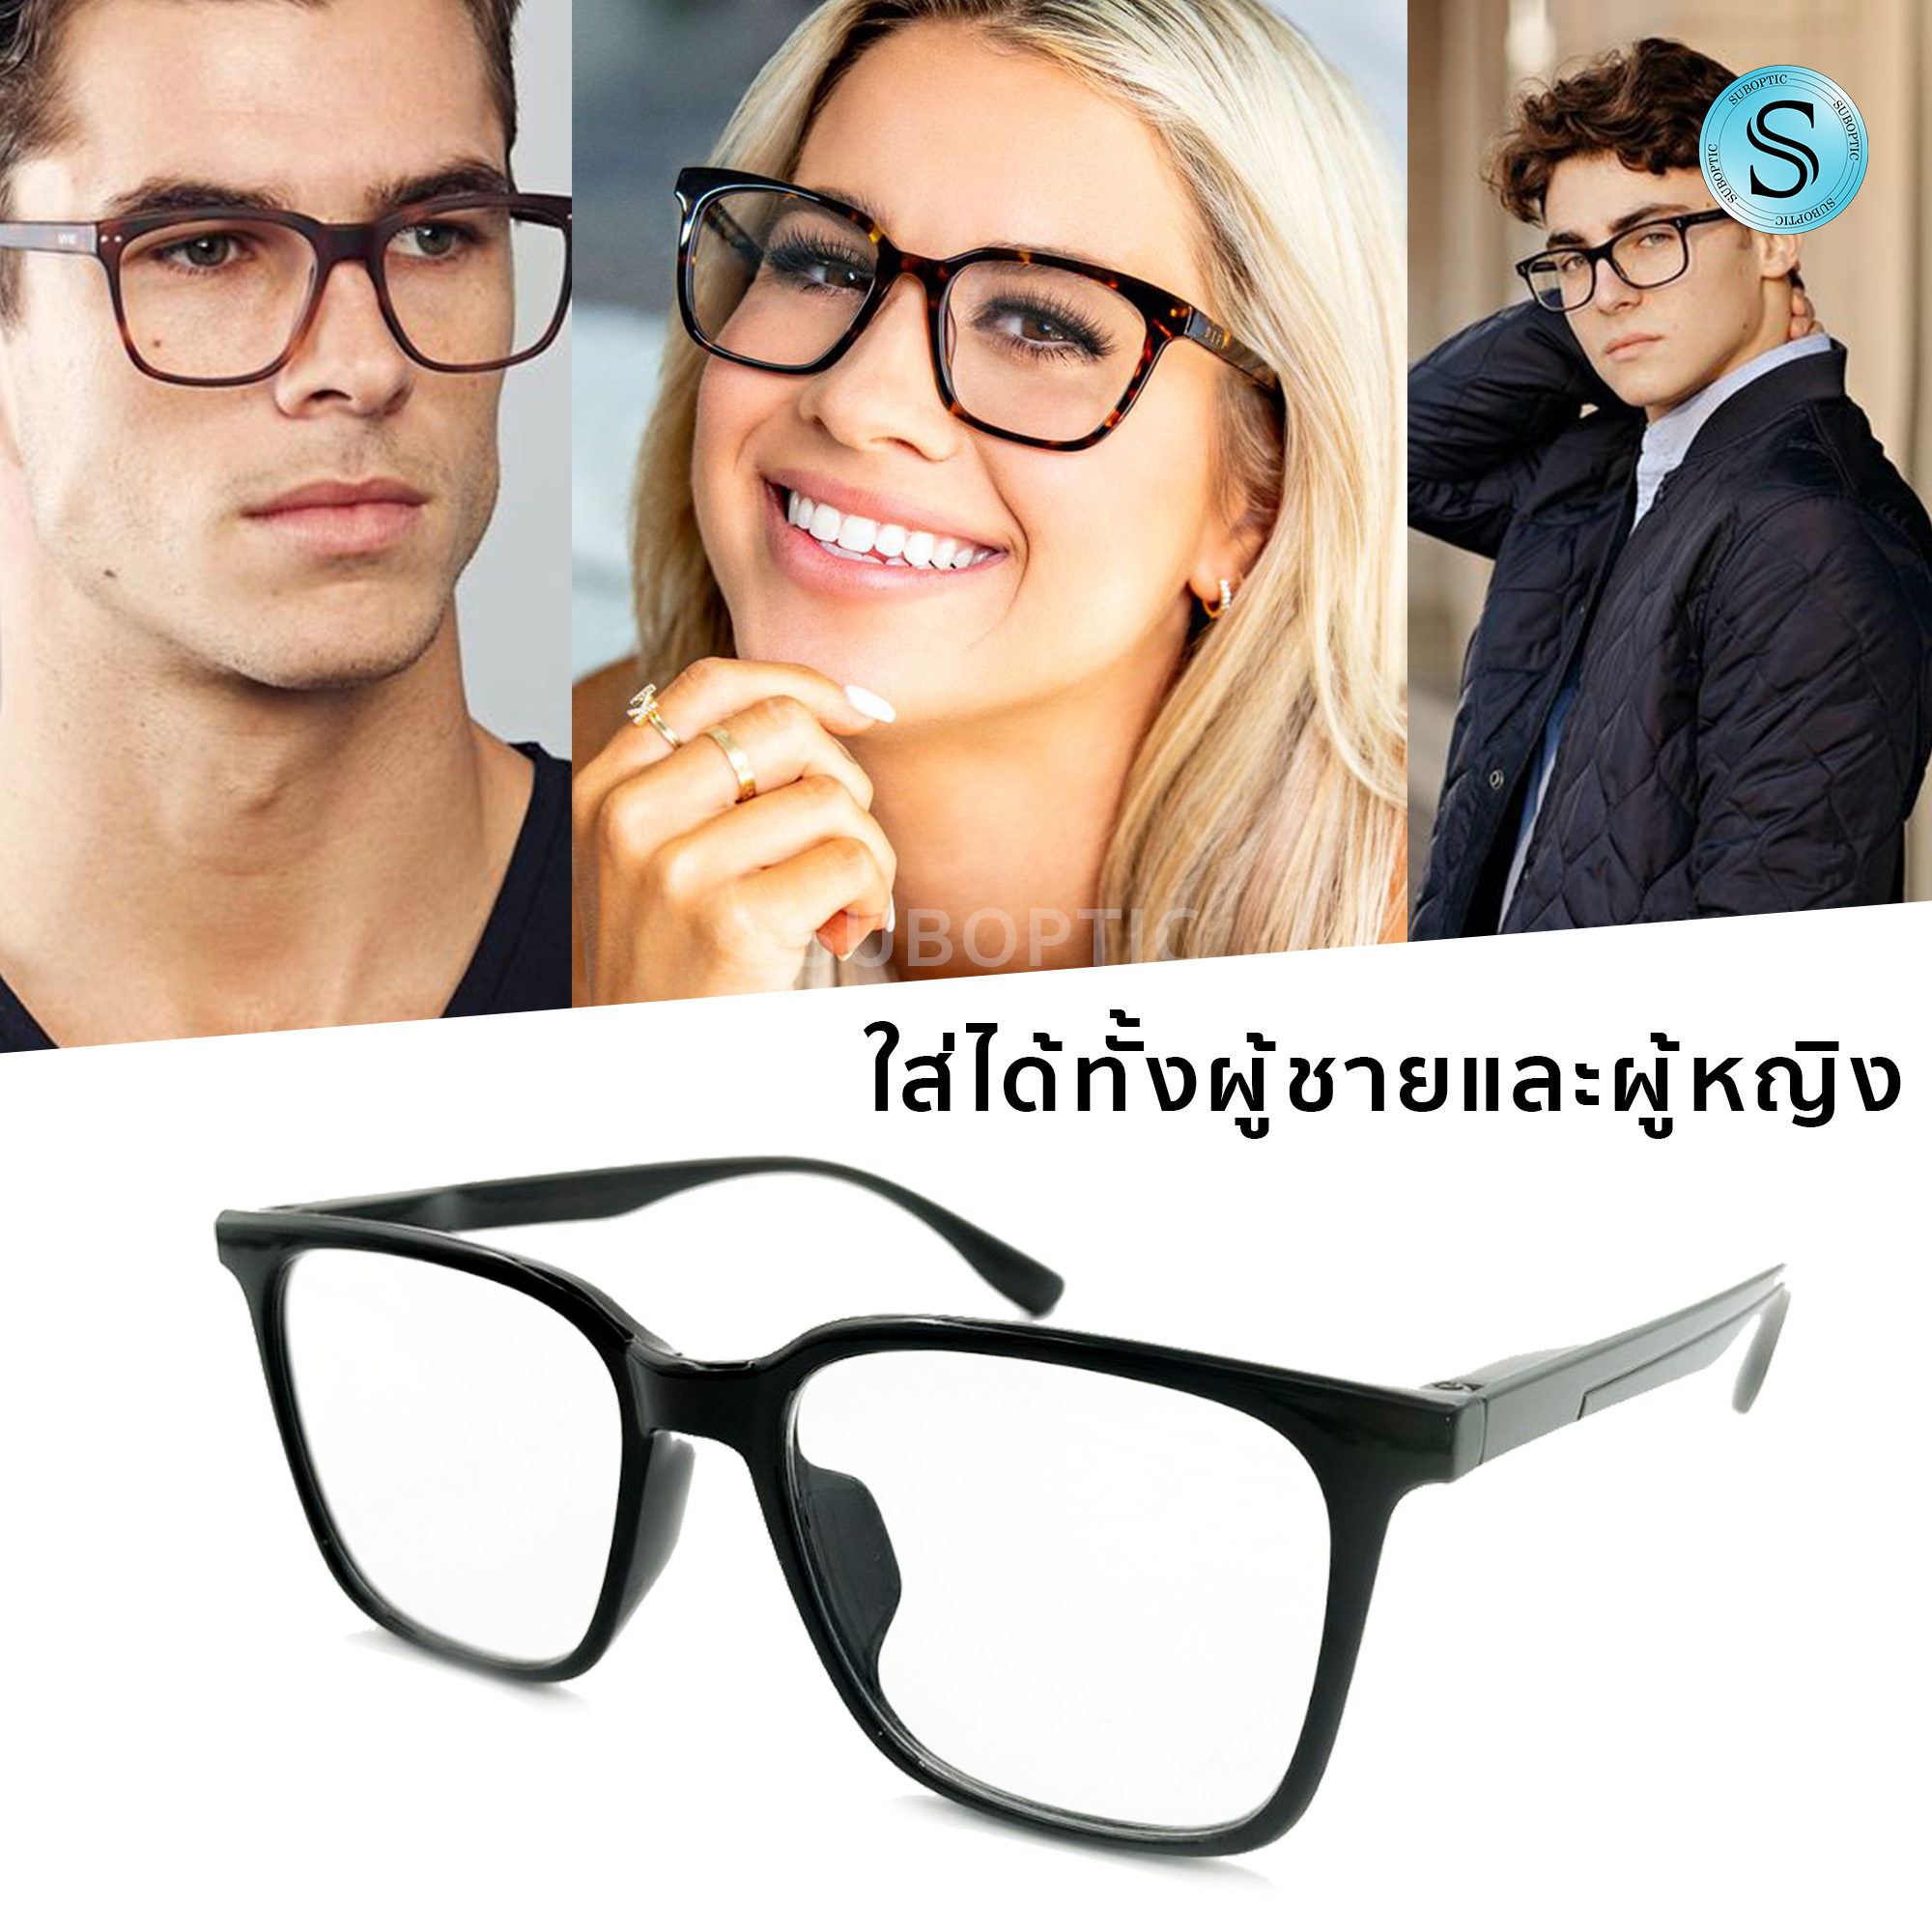 ข้อมูลประกอบของ Sic แว่นสายตายาว ขาสปริง แว่นสายตา แว่นสายตาสำหรับอ่านหนังสือ แว่นตา+กรอบแว่น